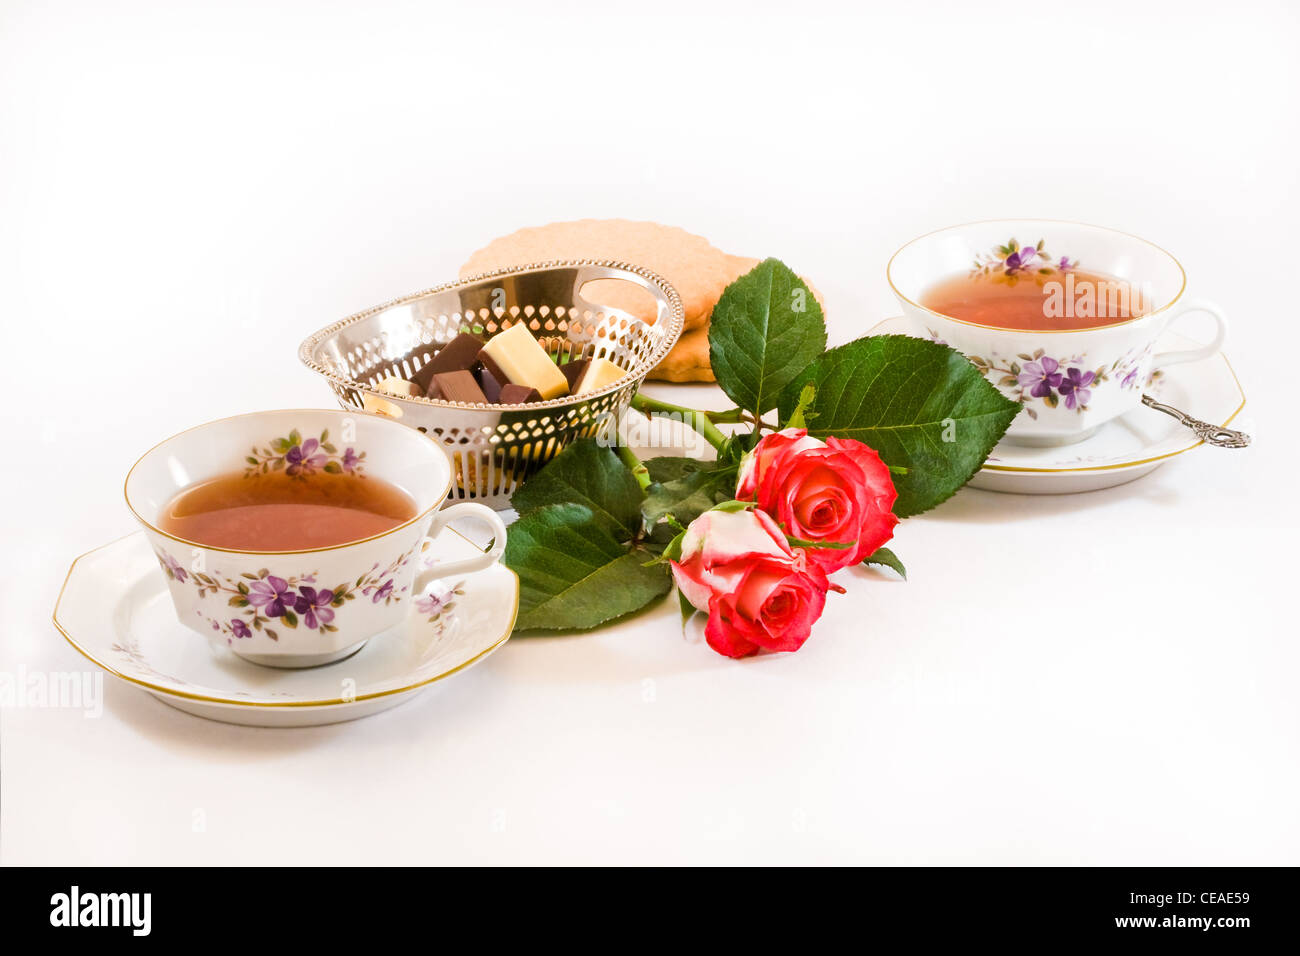 Zwei Tassen Tee mit Schokolade, Plätzchen und rote Rosen auf weißem  Hintergrund Stockfotografie - Alamy